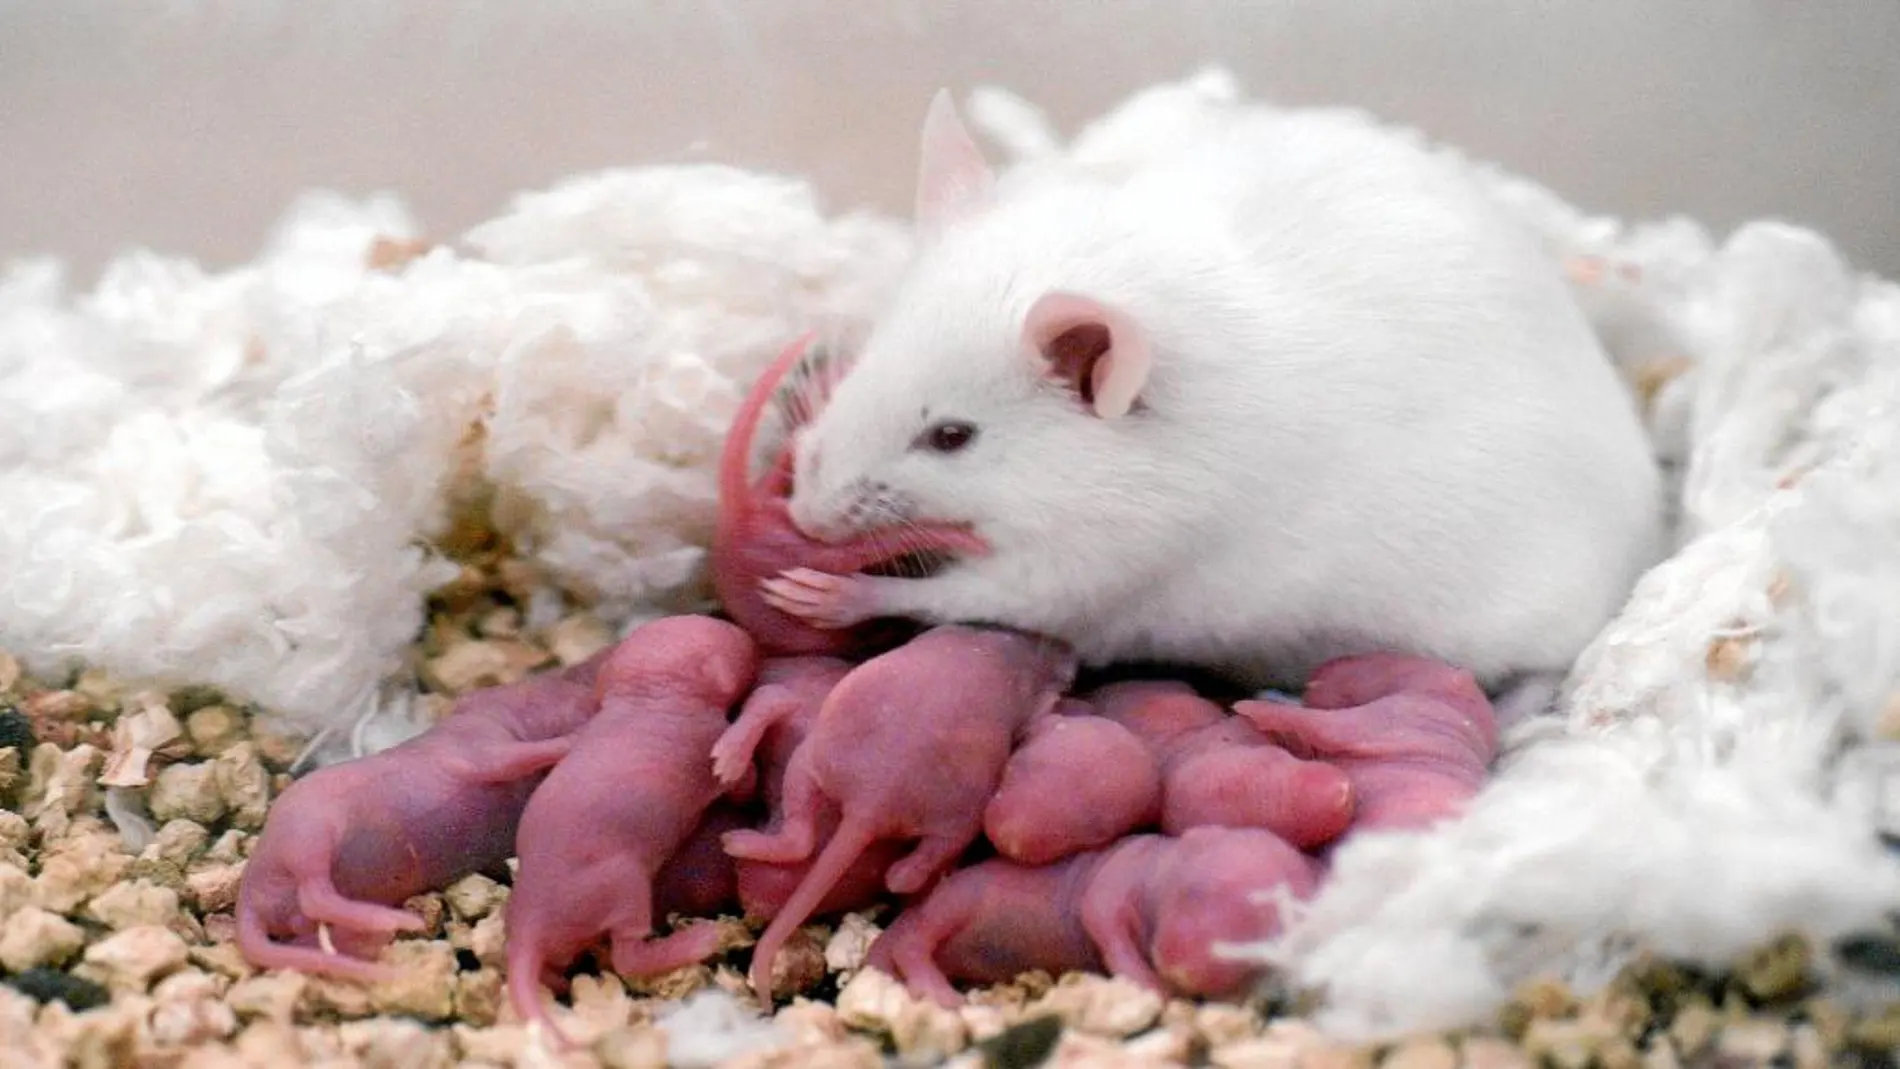 Los investigadores de Japón midieron los niveles de c-Fos, un indicador de la actividad neuronal en los ratones